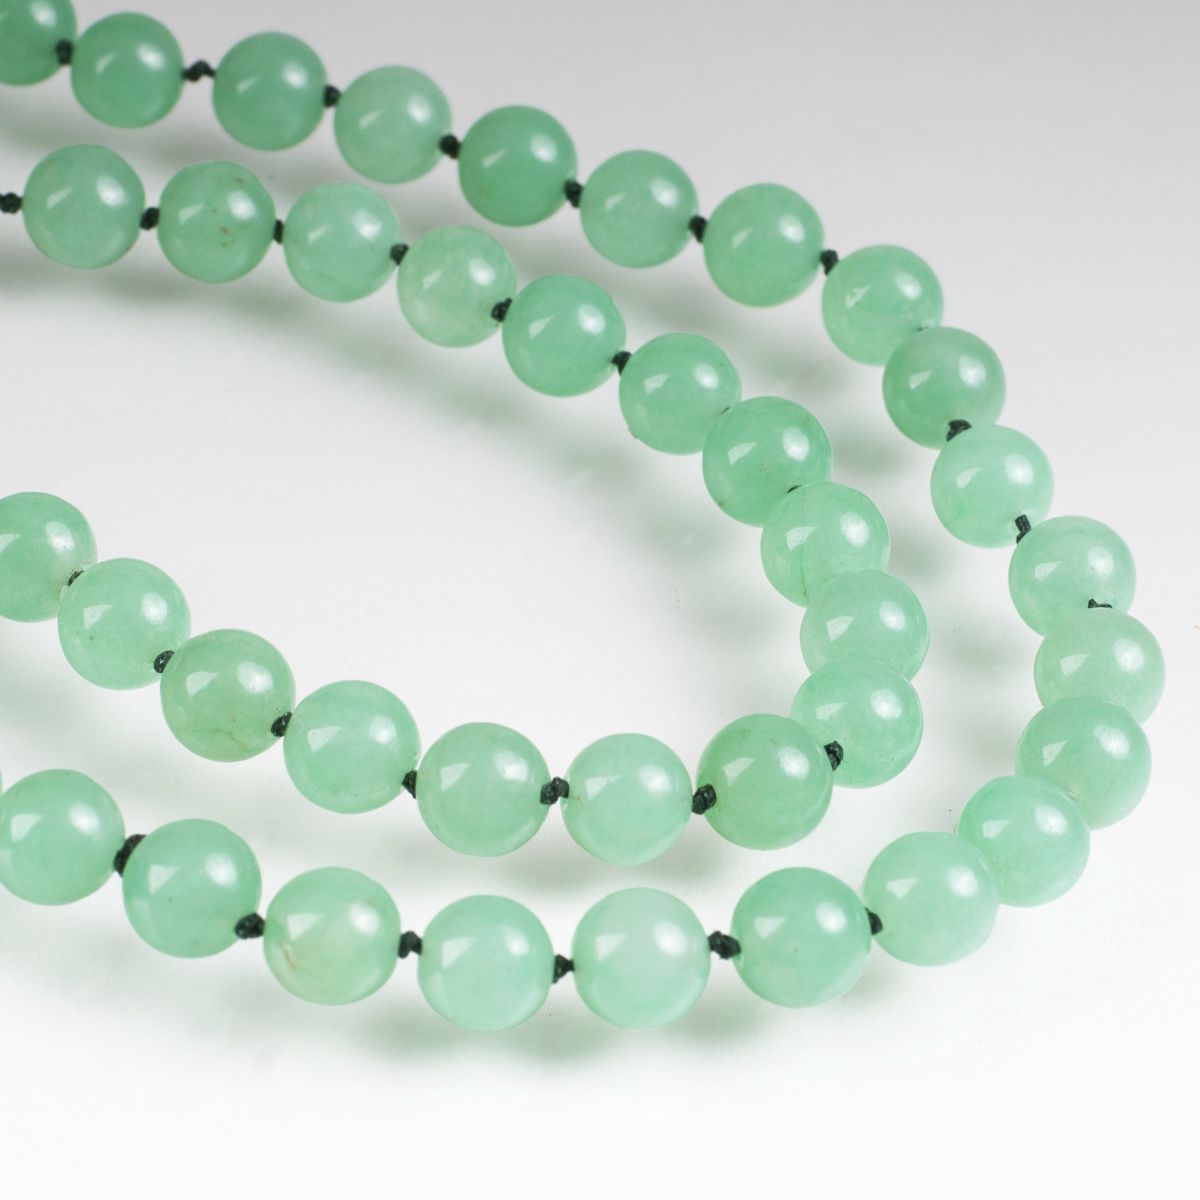 A long jade green quartz necklace